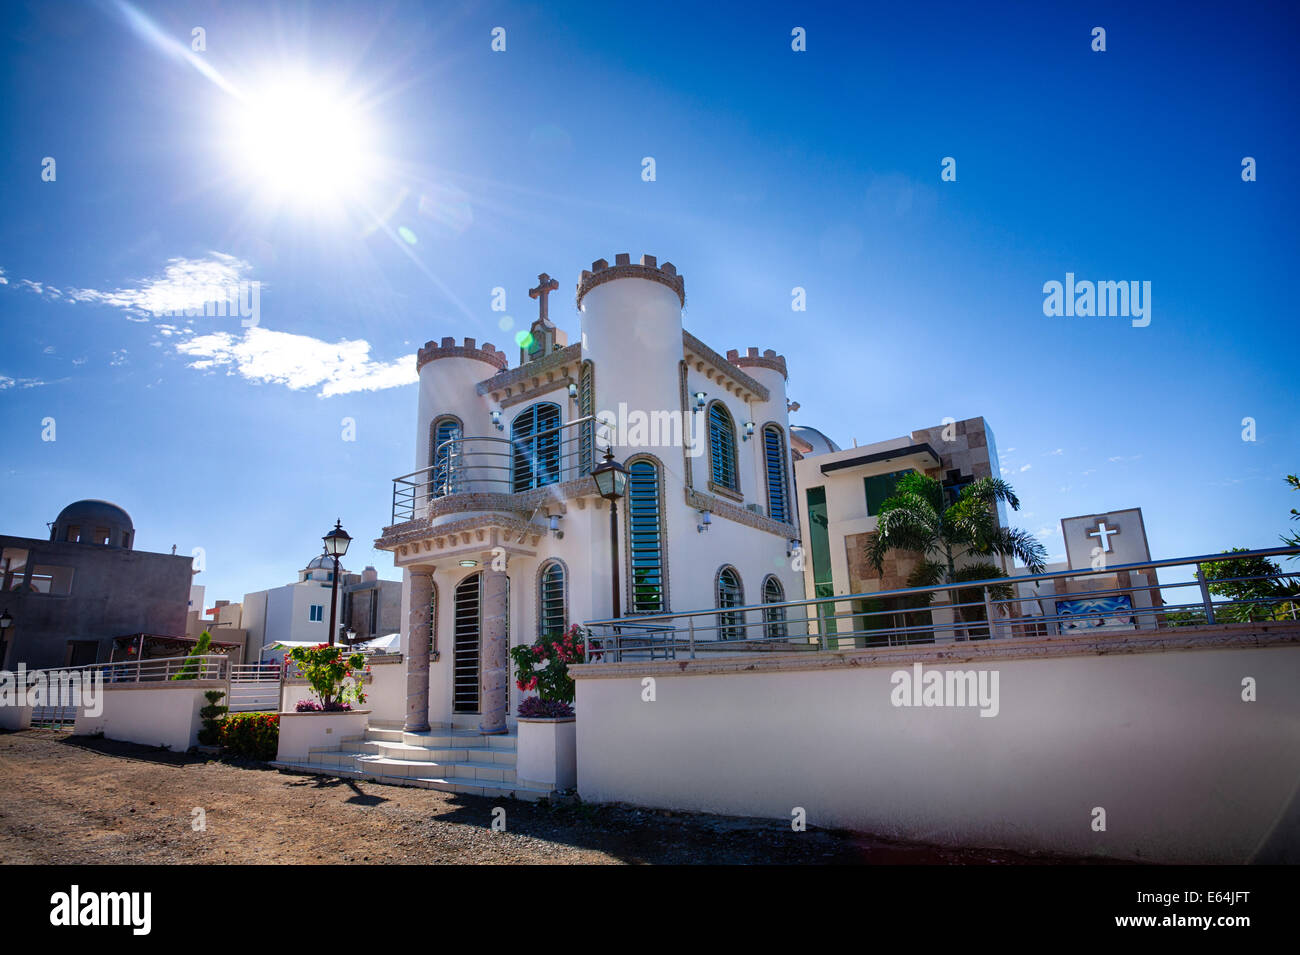 Das luxuriöse Mausoleum Jardines de Humaya, letzte Ruhestätte der Narco Drogelords, gleicht eher einem gehobenen Viertel. Stockfoto